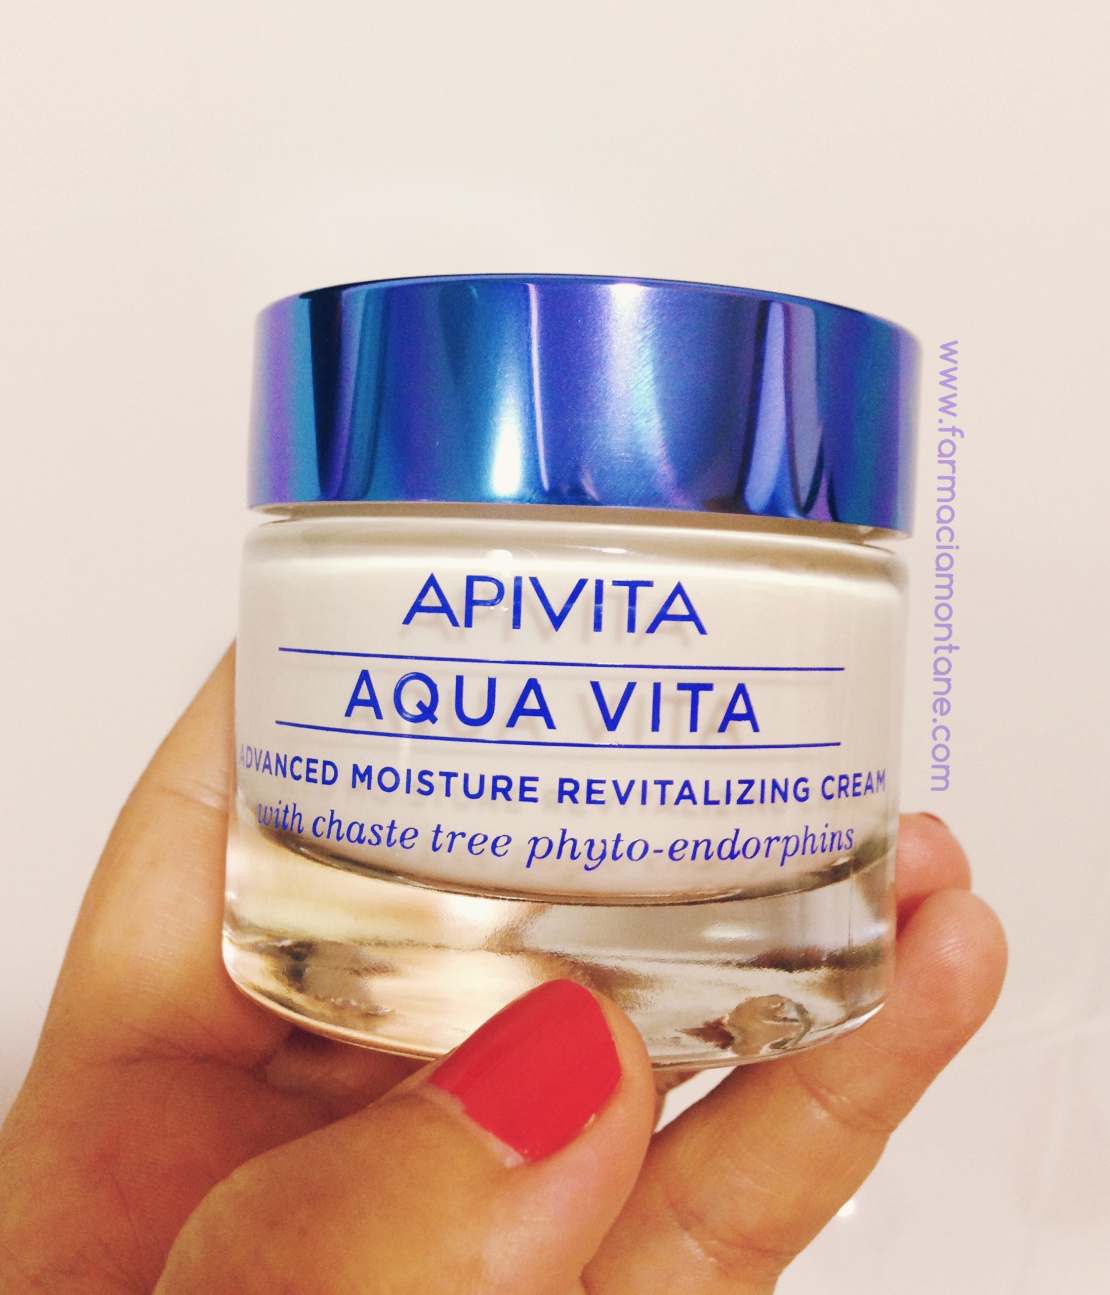 Aquavita Apivita, la clau de la hidratació facial